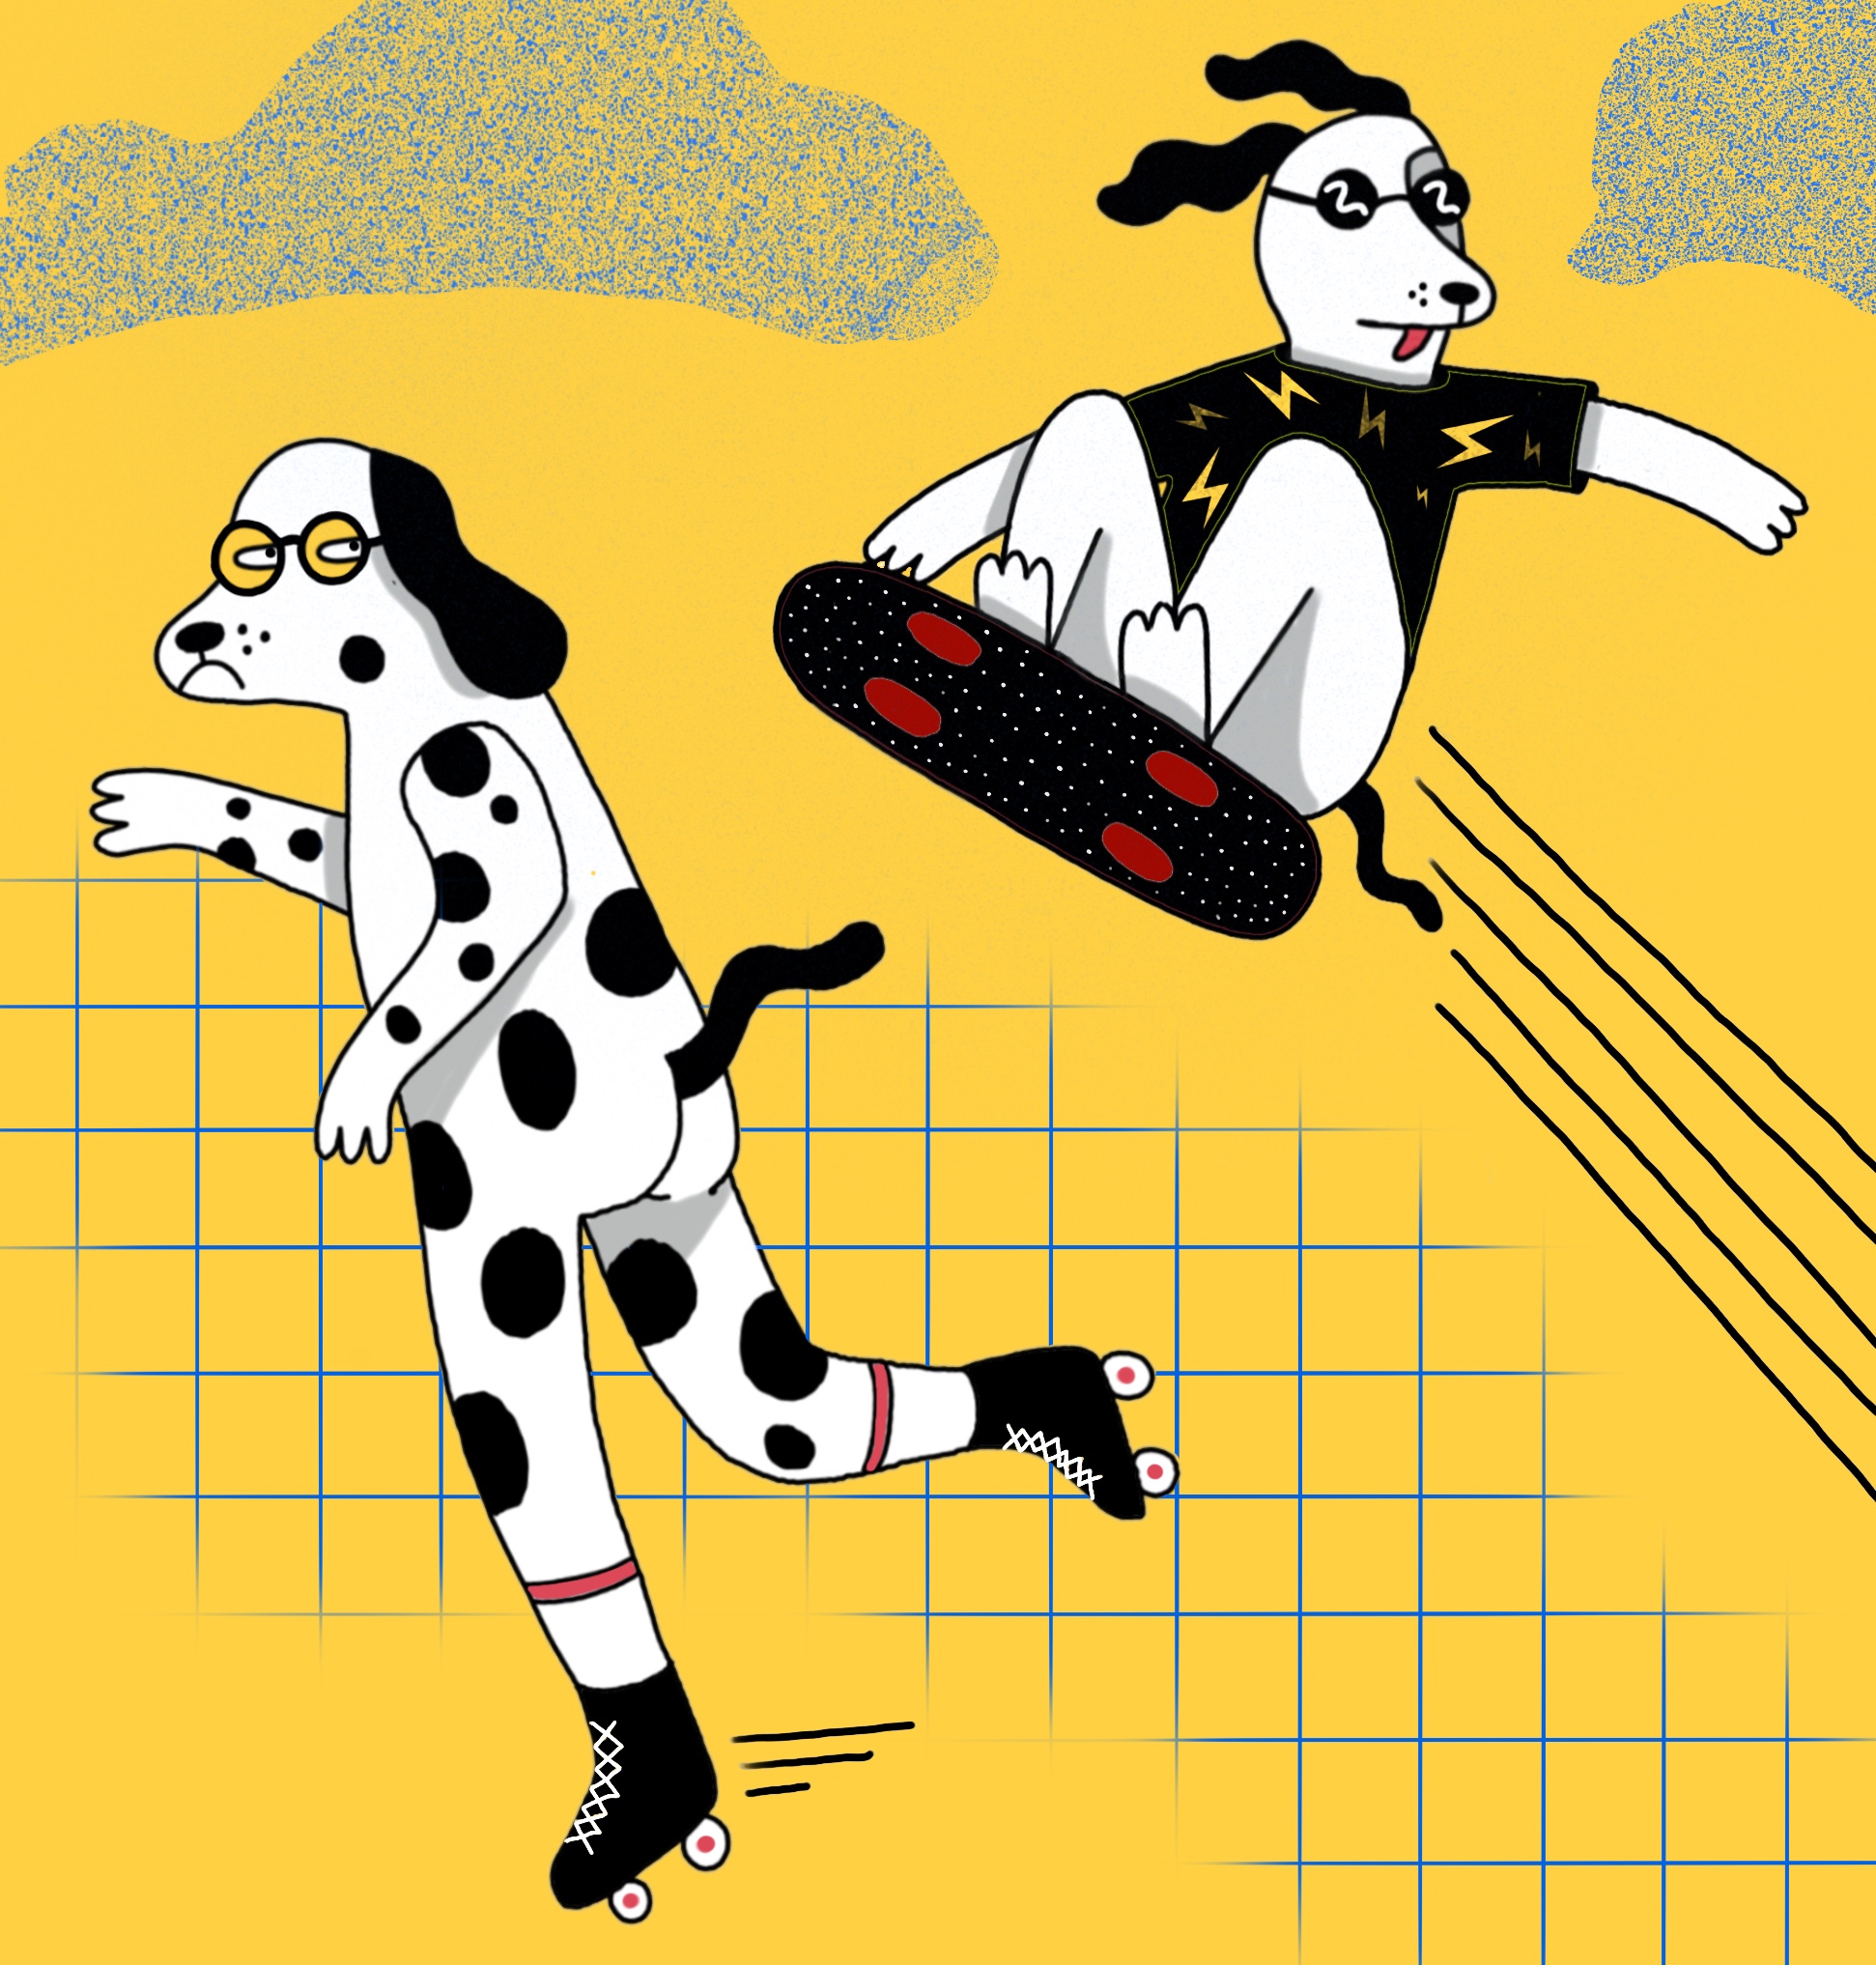 <i>Dogs</i> <br/> digital illustration, 2020